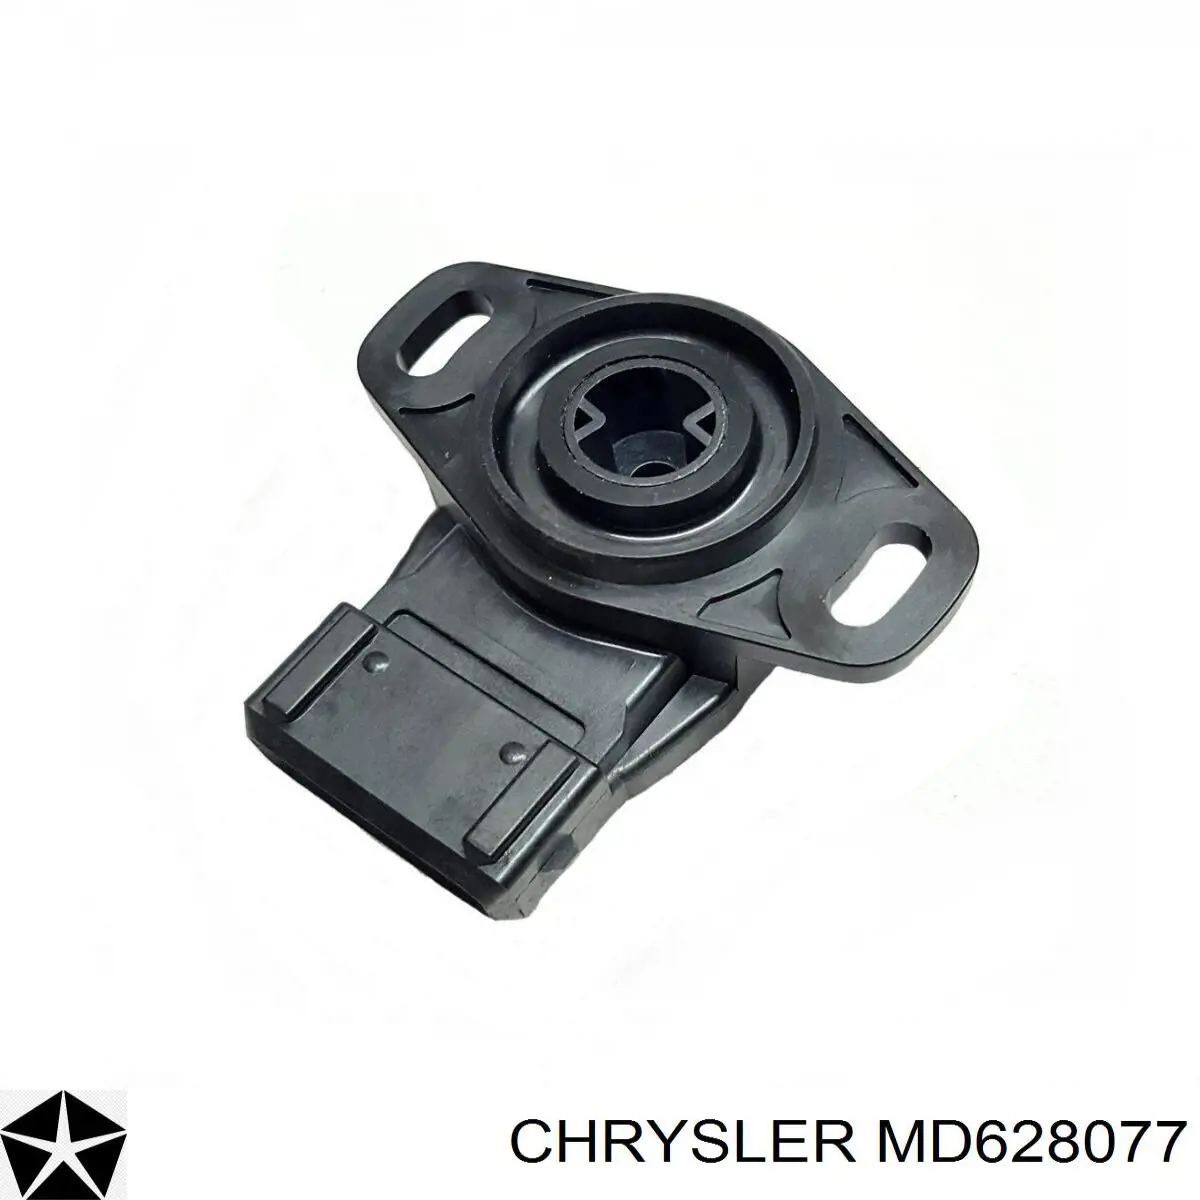 MD628077 Chrysler датчик положения дроссельной заслонки (потенциометр)